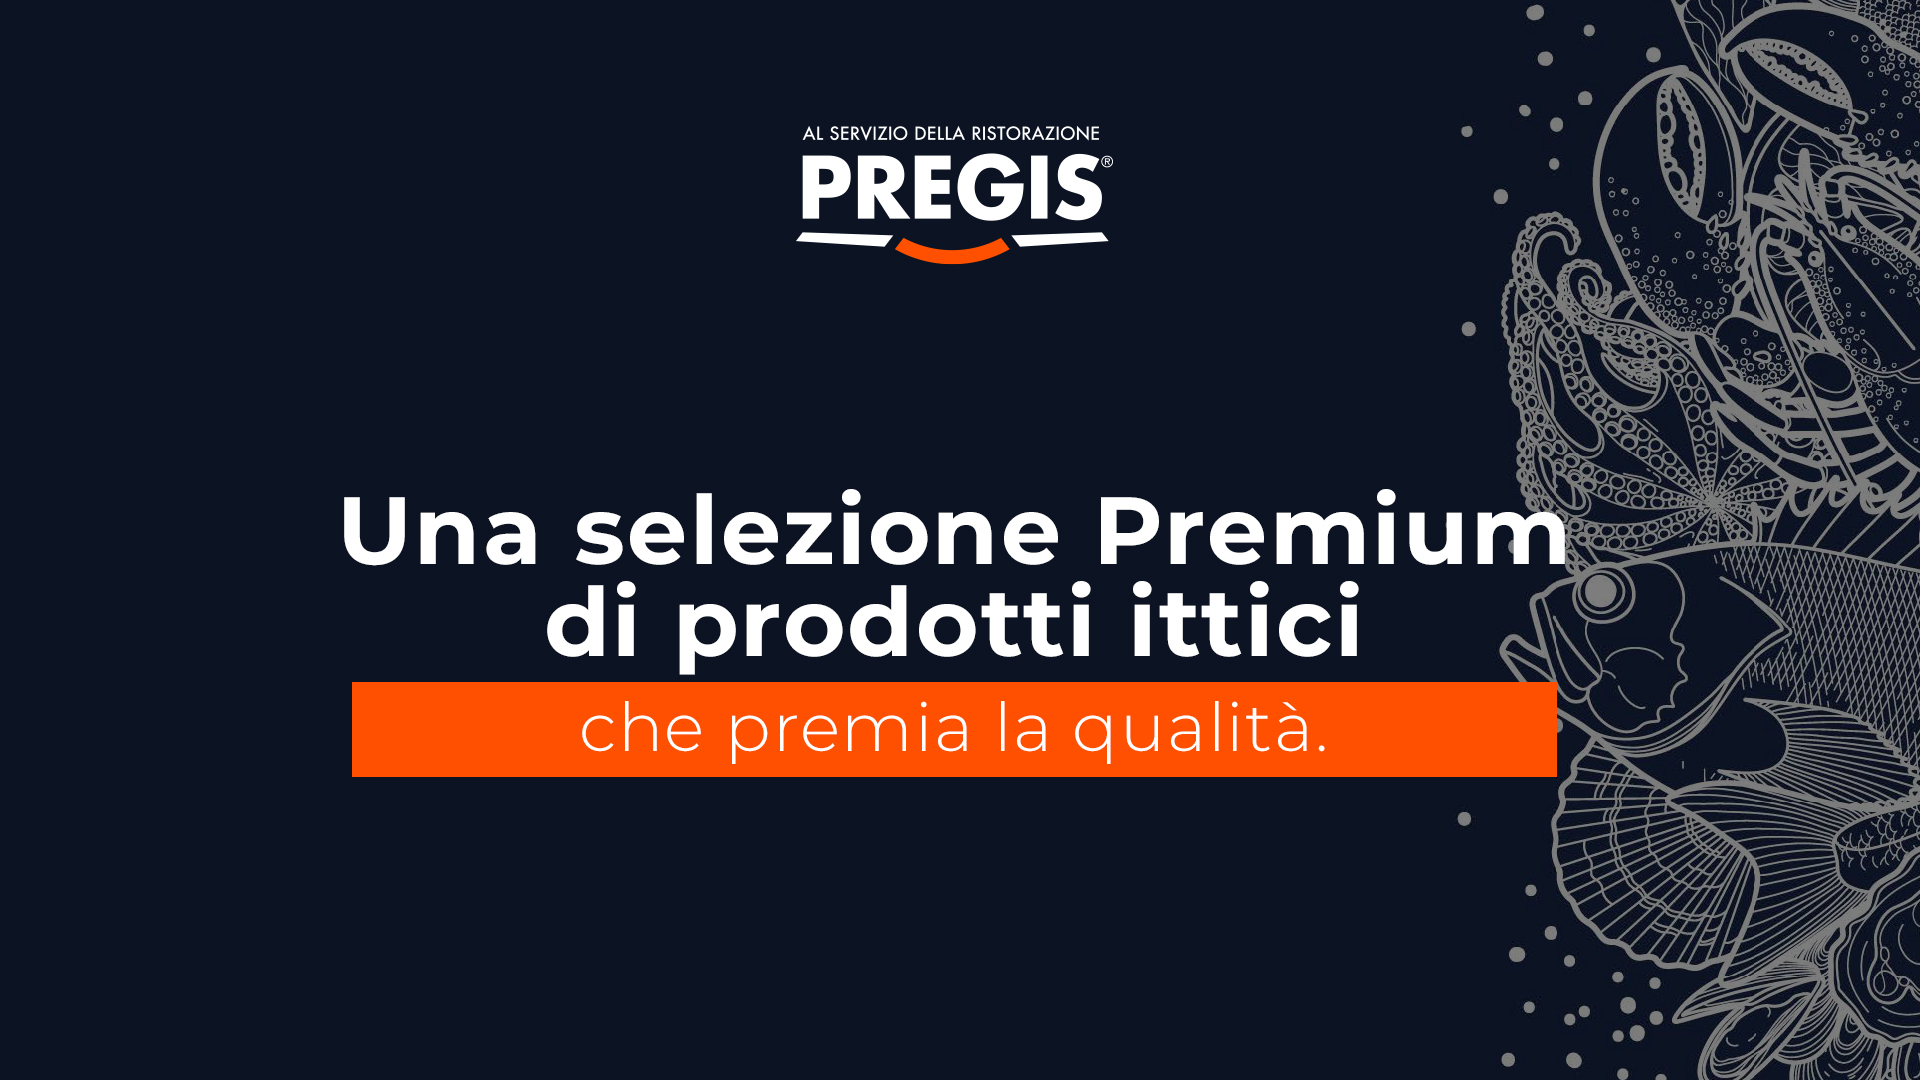 PREGIS: una selezione Premium di prodotti ittici che premia la qualità